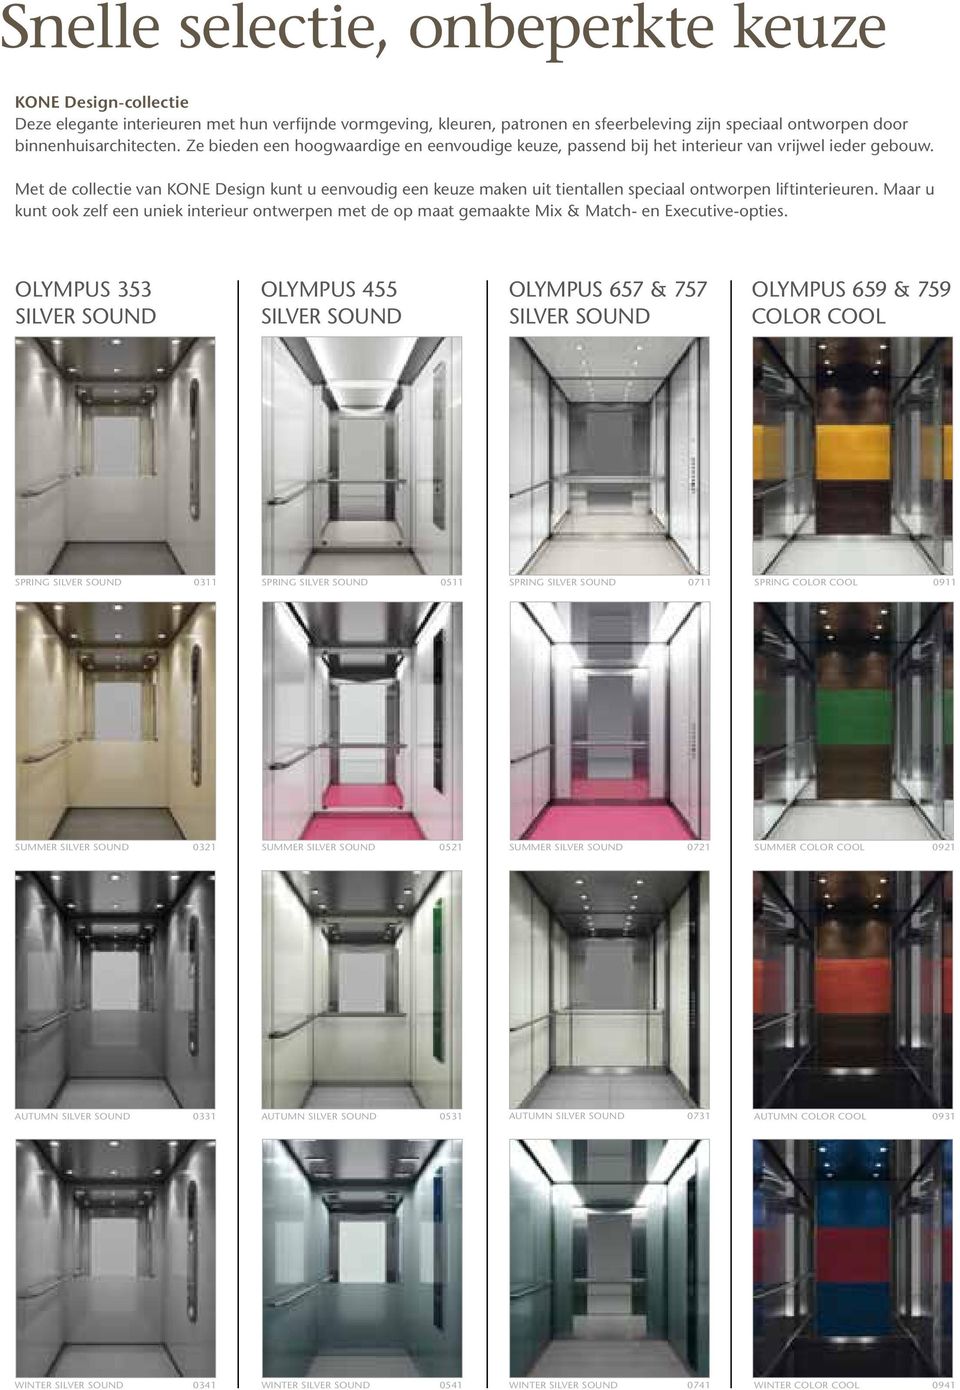 Met de collectie van KONE Design kunt u eenvoudig een keuze maken uit tientallen speciaal ontworpen liftinterieuren.